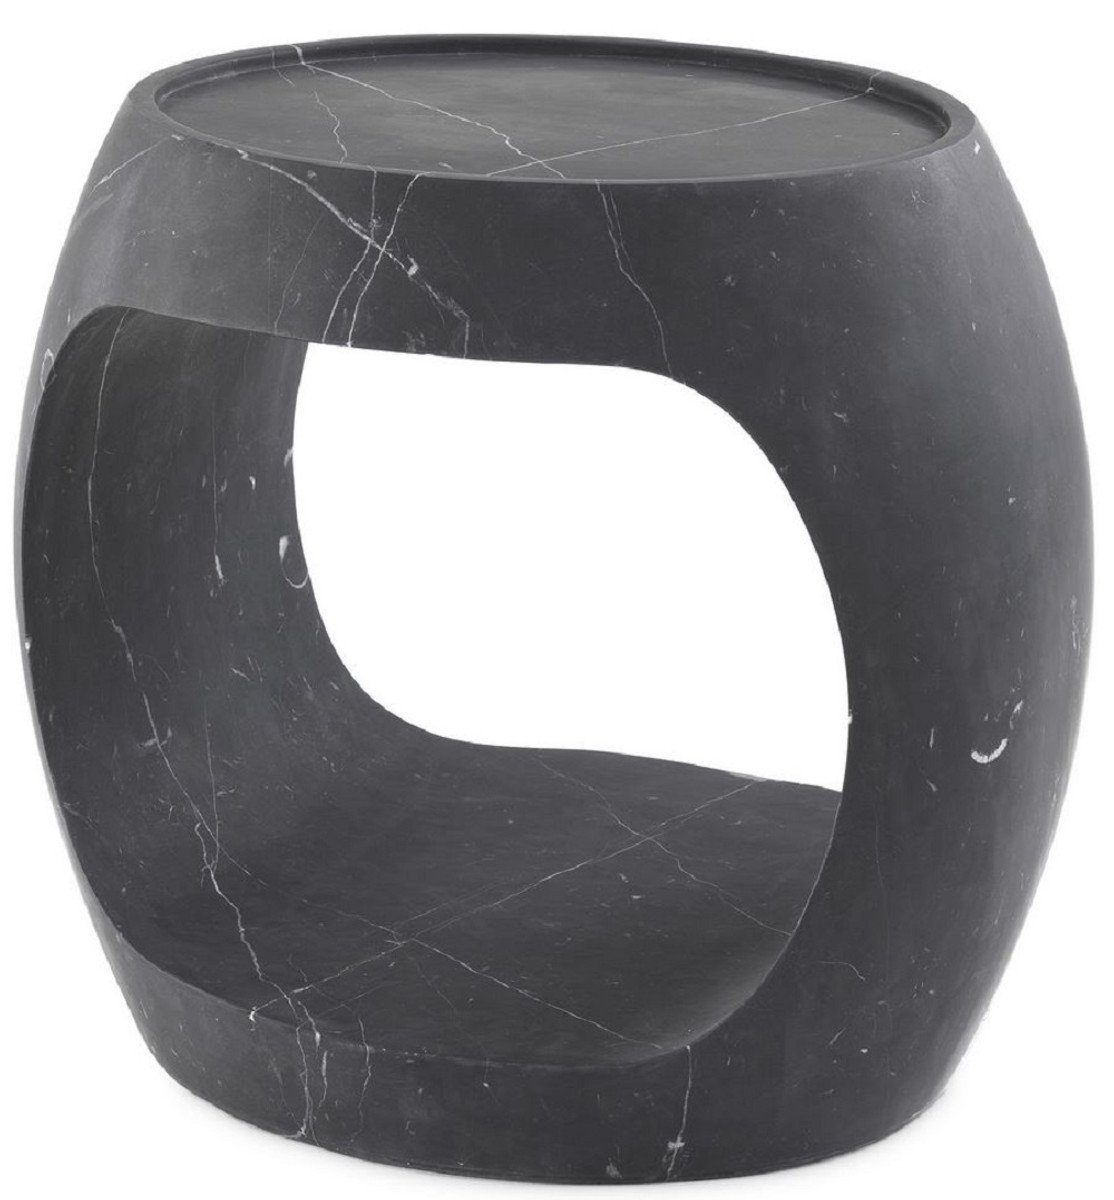 Casa Padrino Beistelltisch Luxus Marmor Beistelltisch Schwarz 43 x 36,5 x H. 40,5 cm - Marmor Möbel - Luxus Qualität